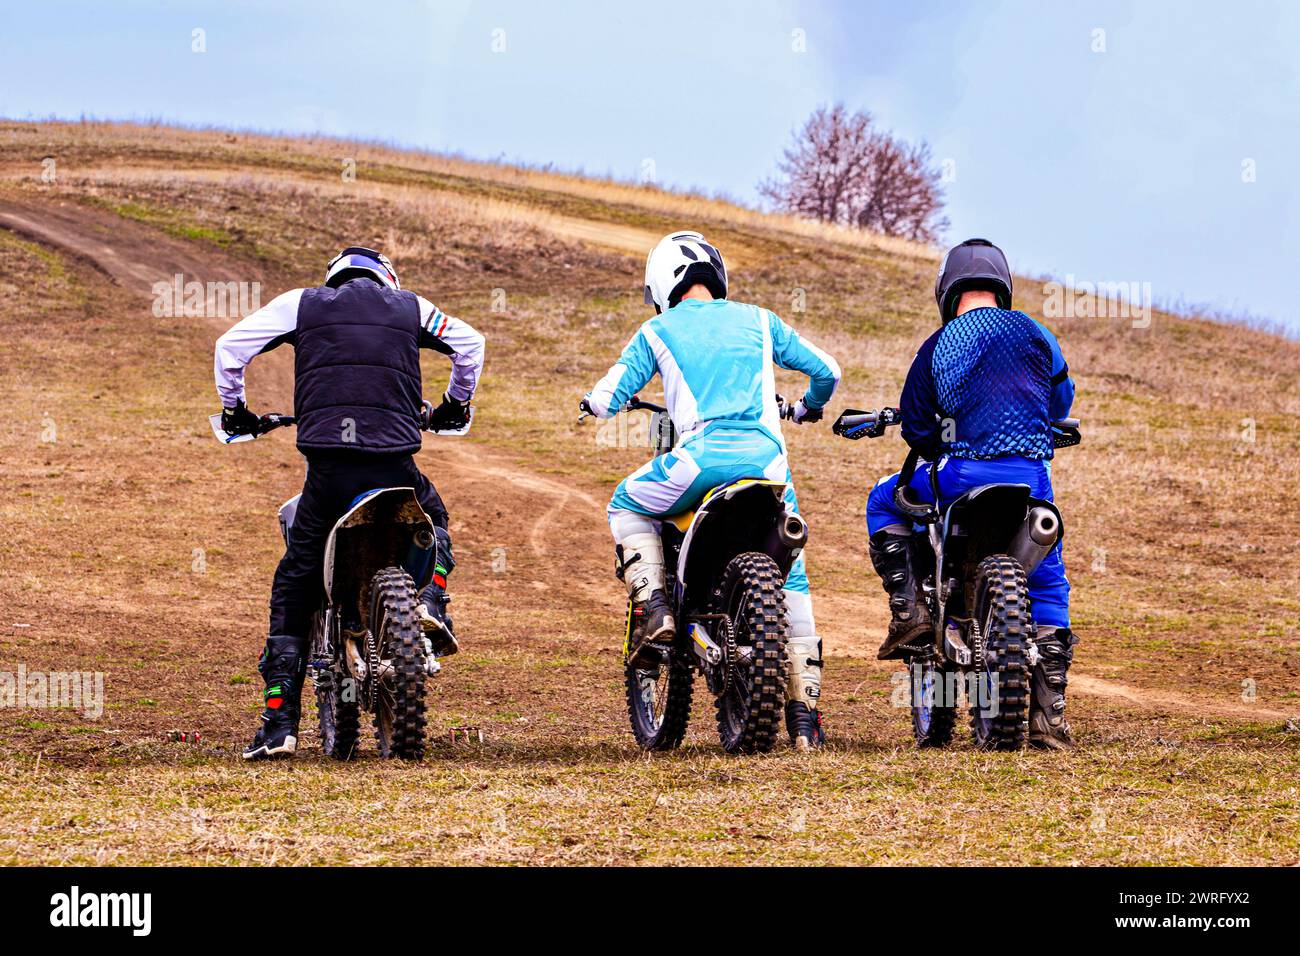 Drei Motorradfahrer fahren mit ihren Fahrrädern auf einer unbefestigten Straße durch ein grasbewachsenes Gelände unter klarem Himmel und tragen Helme aus Sicherheitsgründen Stockfoto